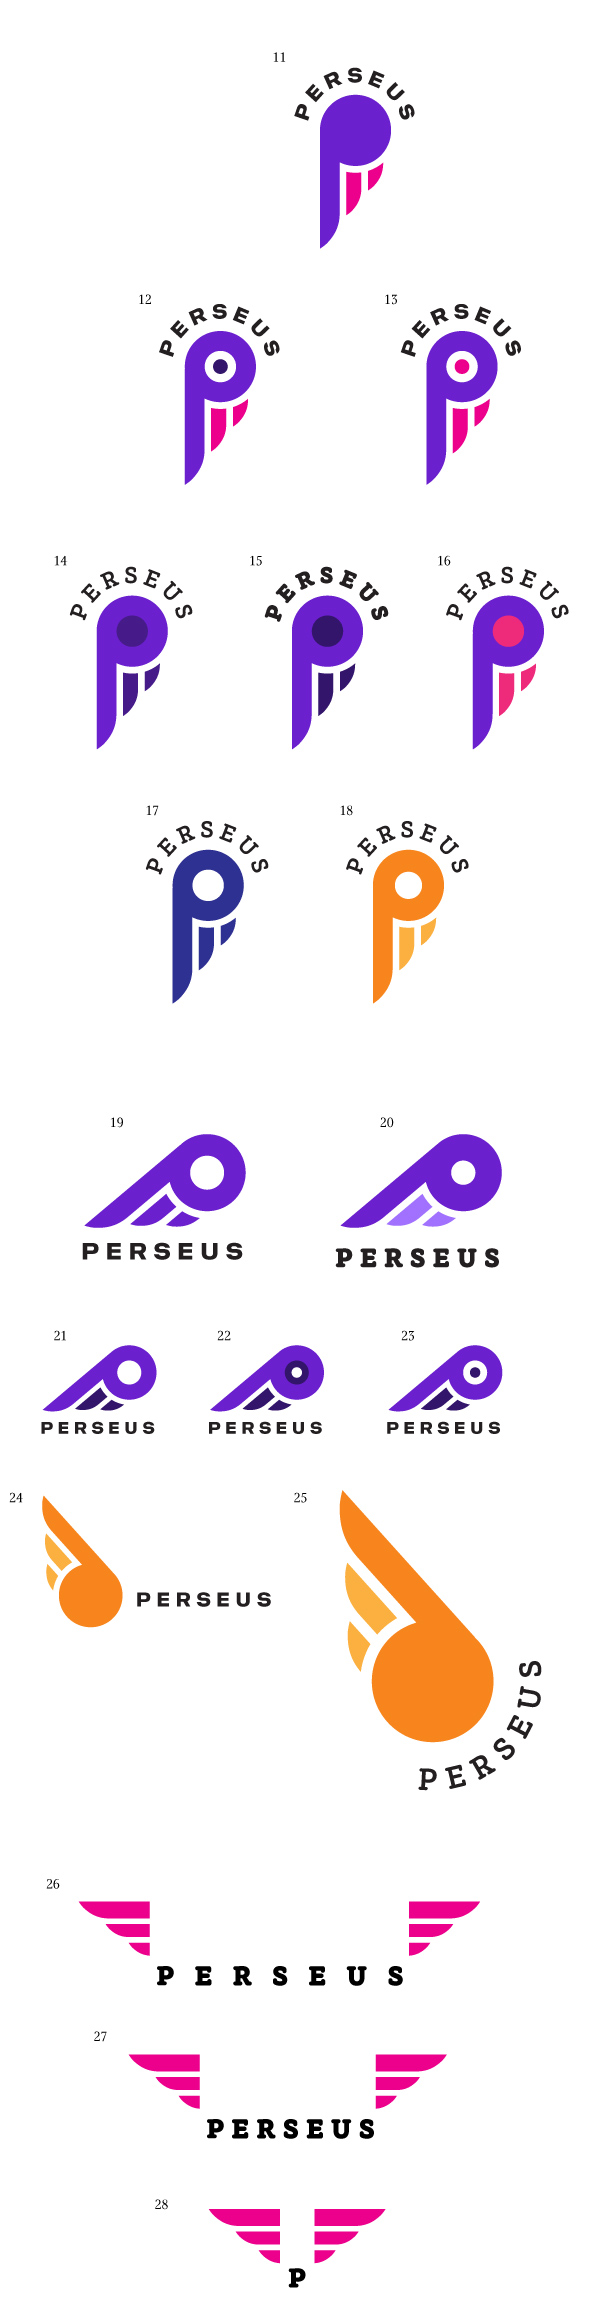 perseus process 03